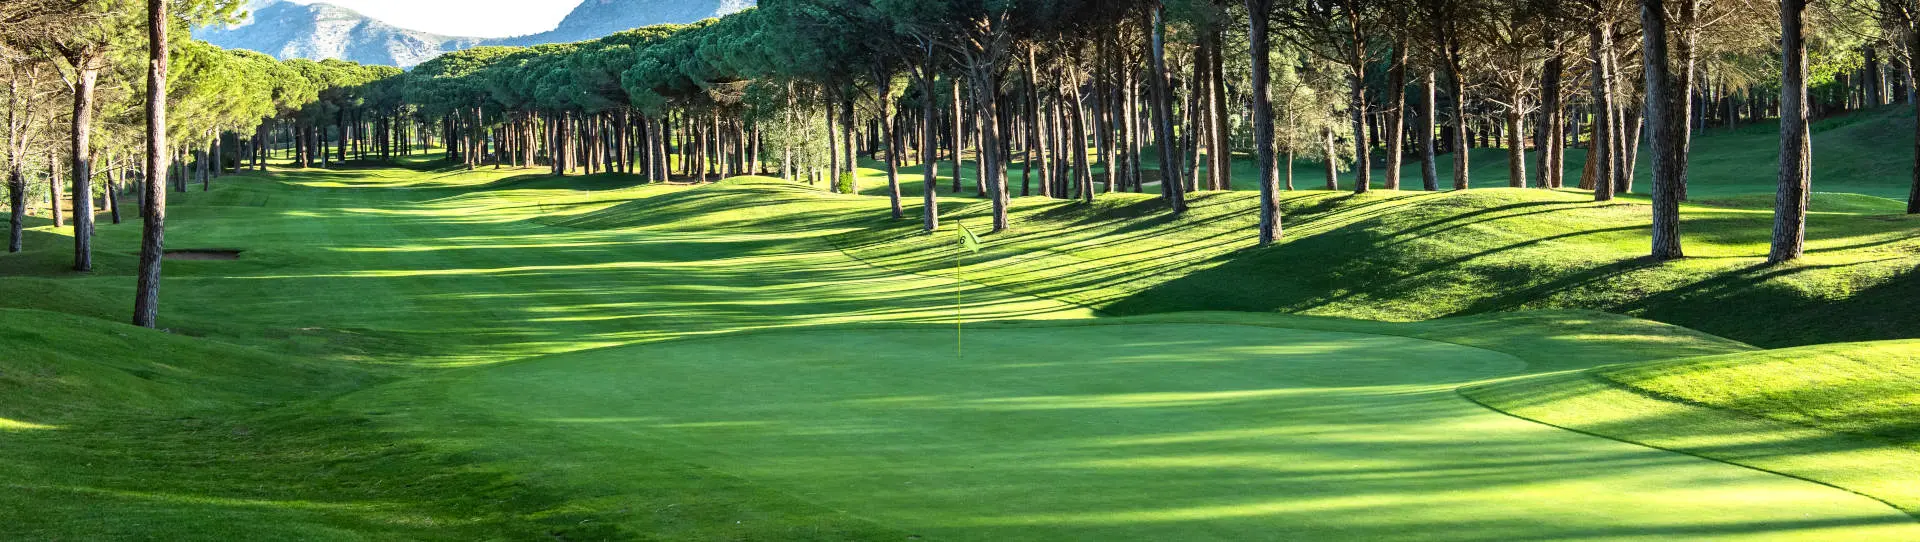 Spain golf courses - Empordá Golf Forest Course - Photo 2